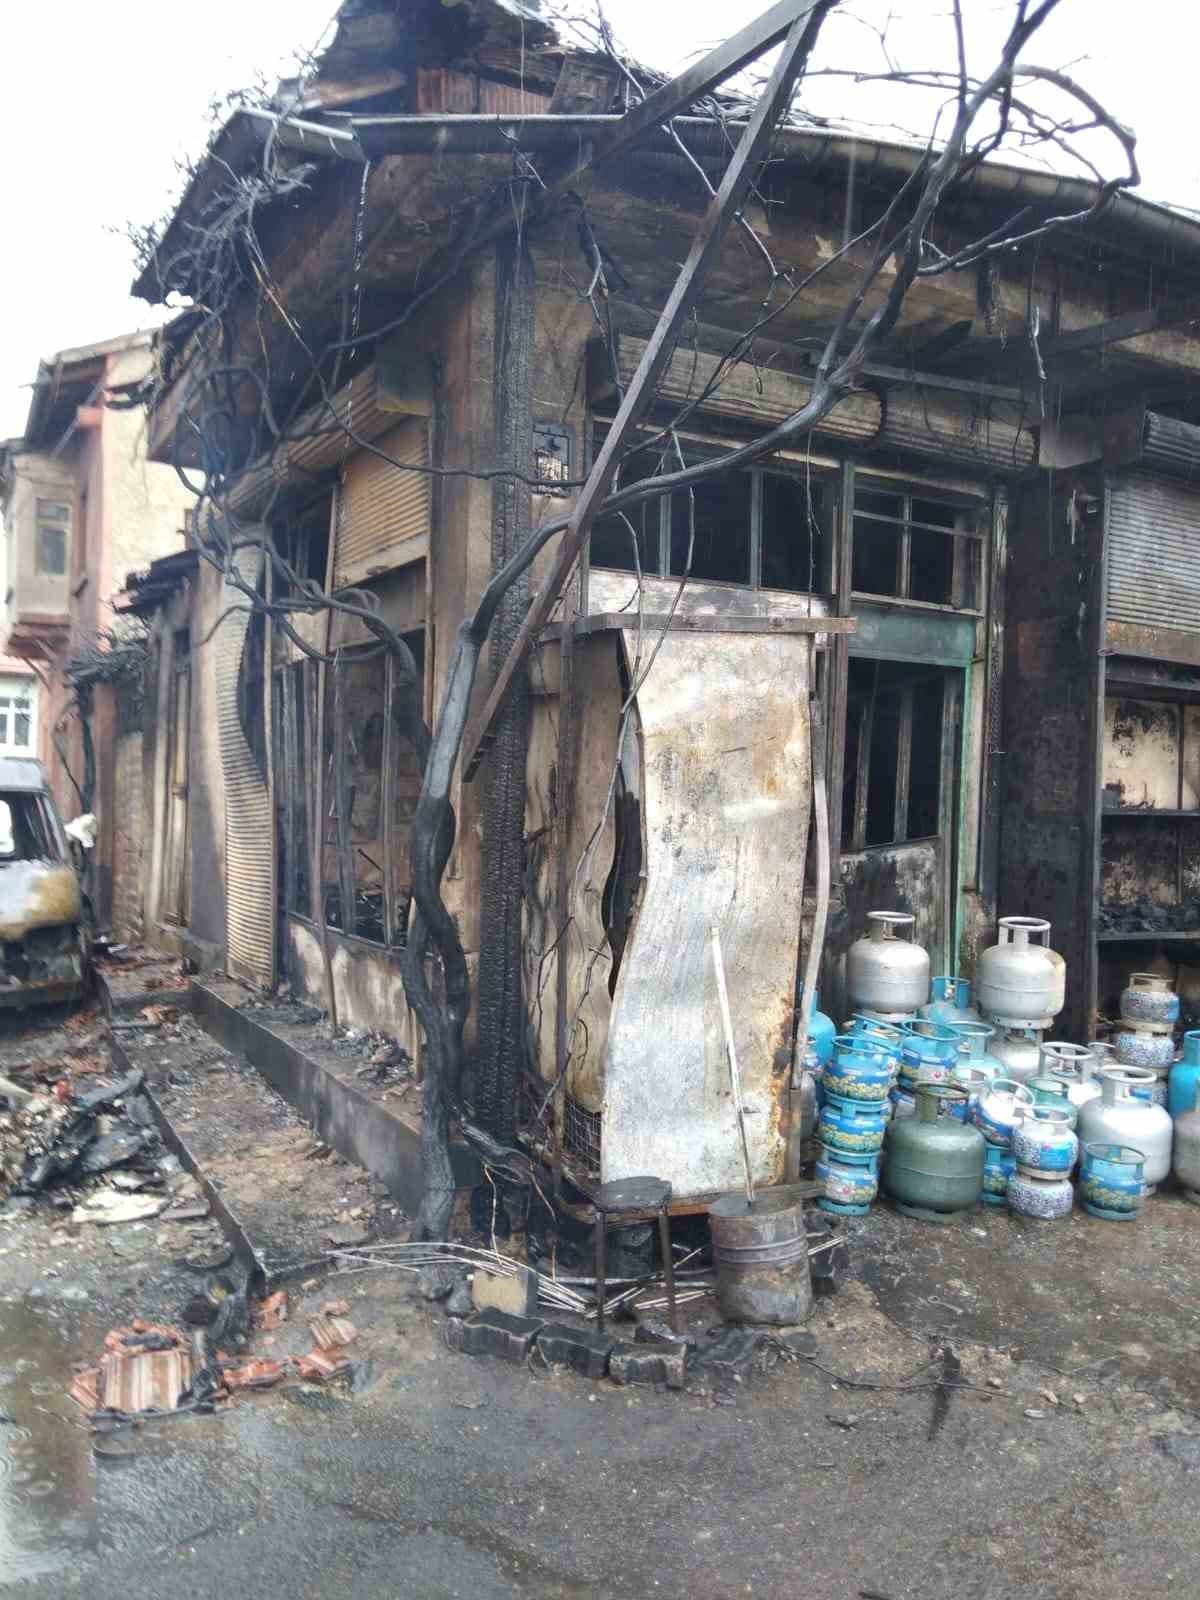 Patlayan trafo bakkal dükkanında yangın çıkardı: 1 ölü